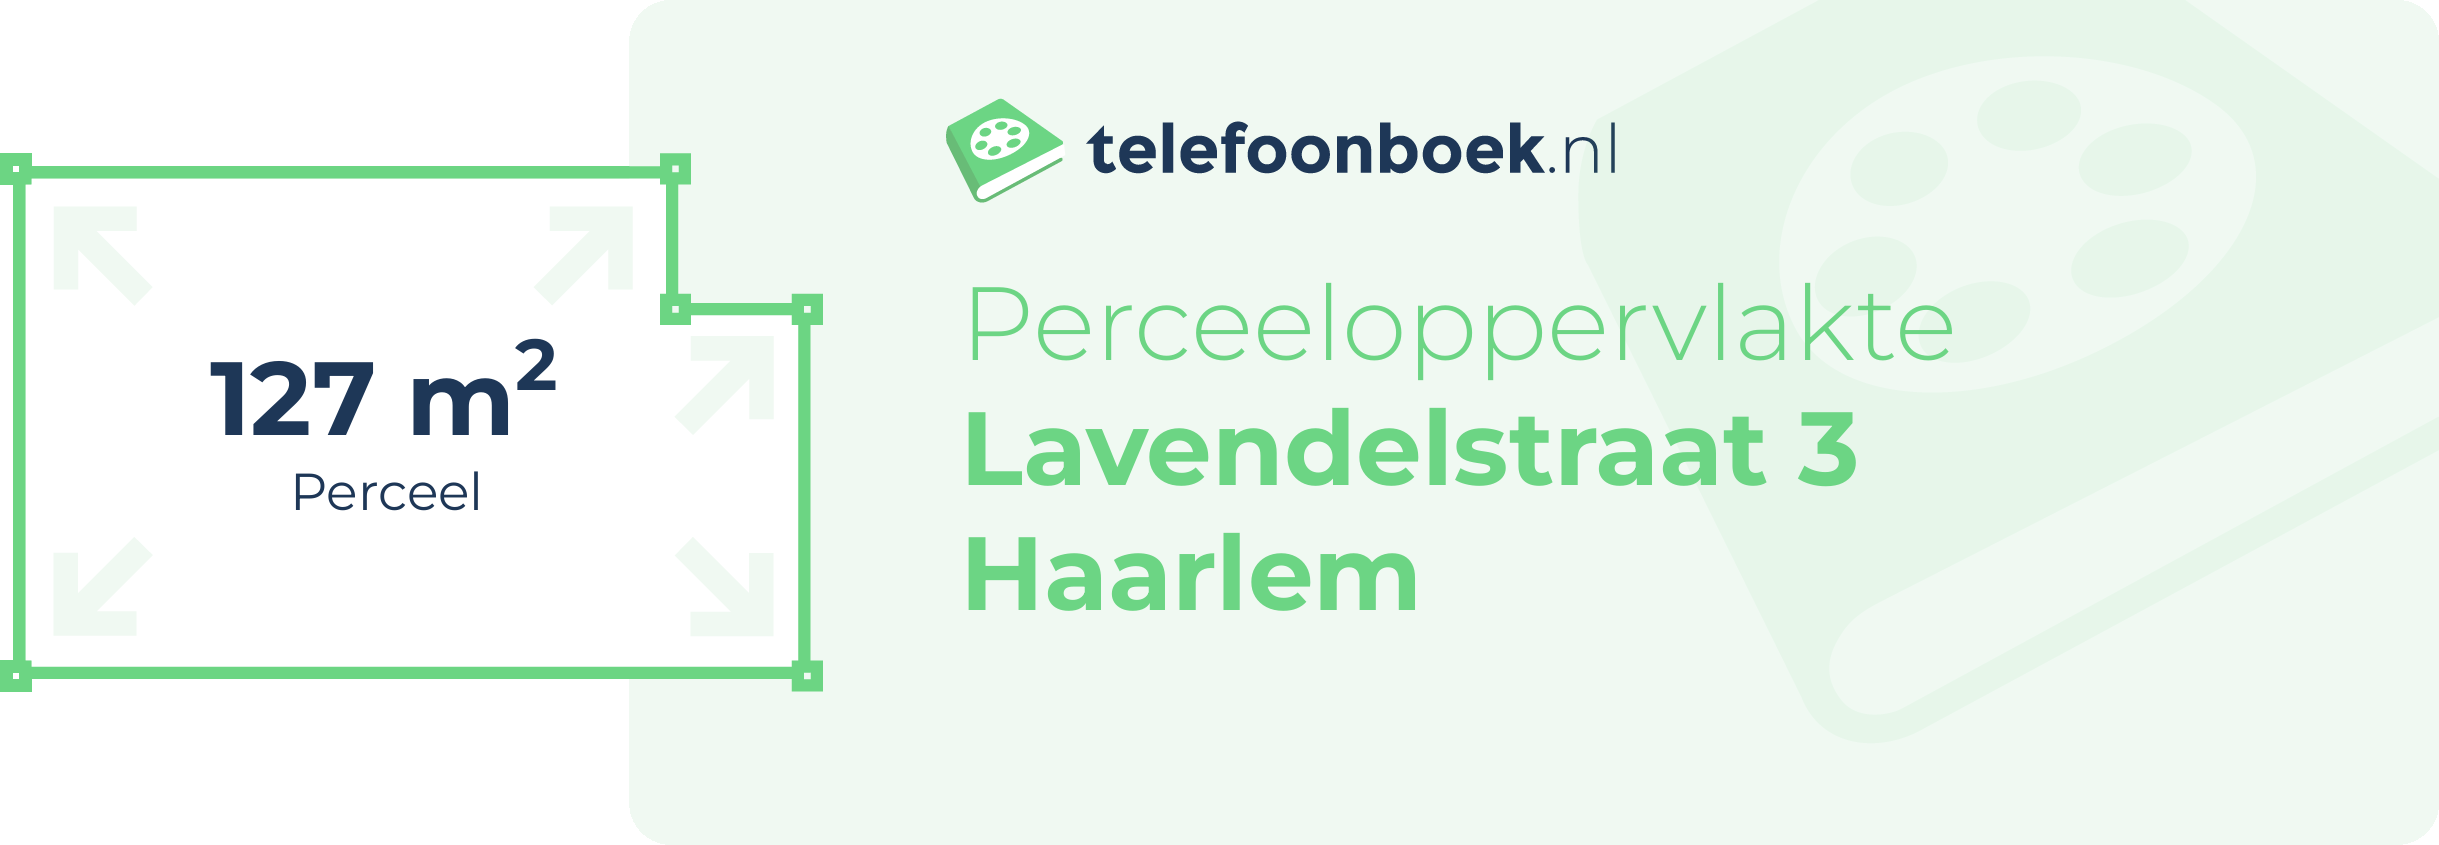 Perceeloppervlakte Lavendelstraat 3 Haarlem